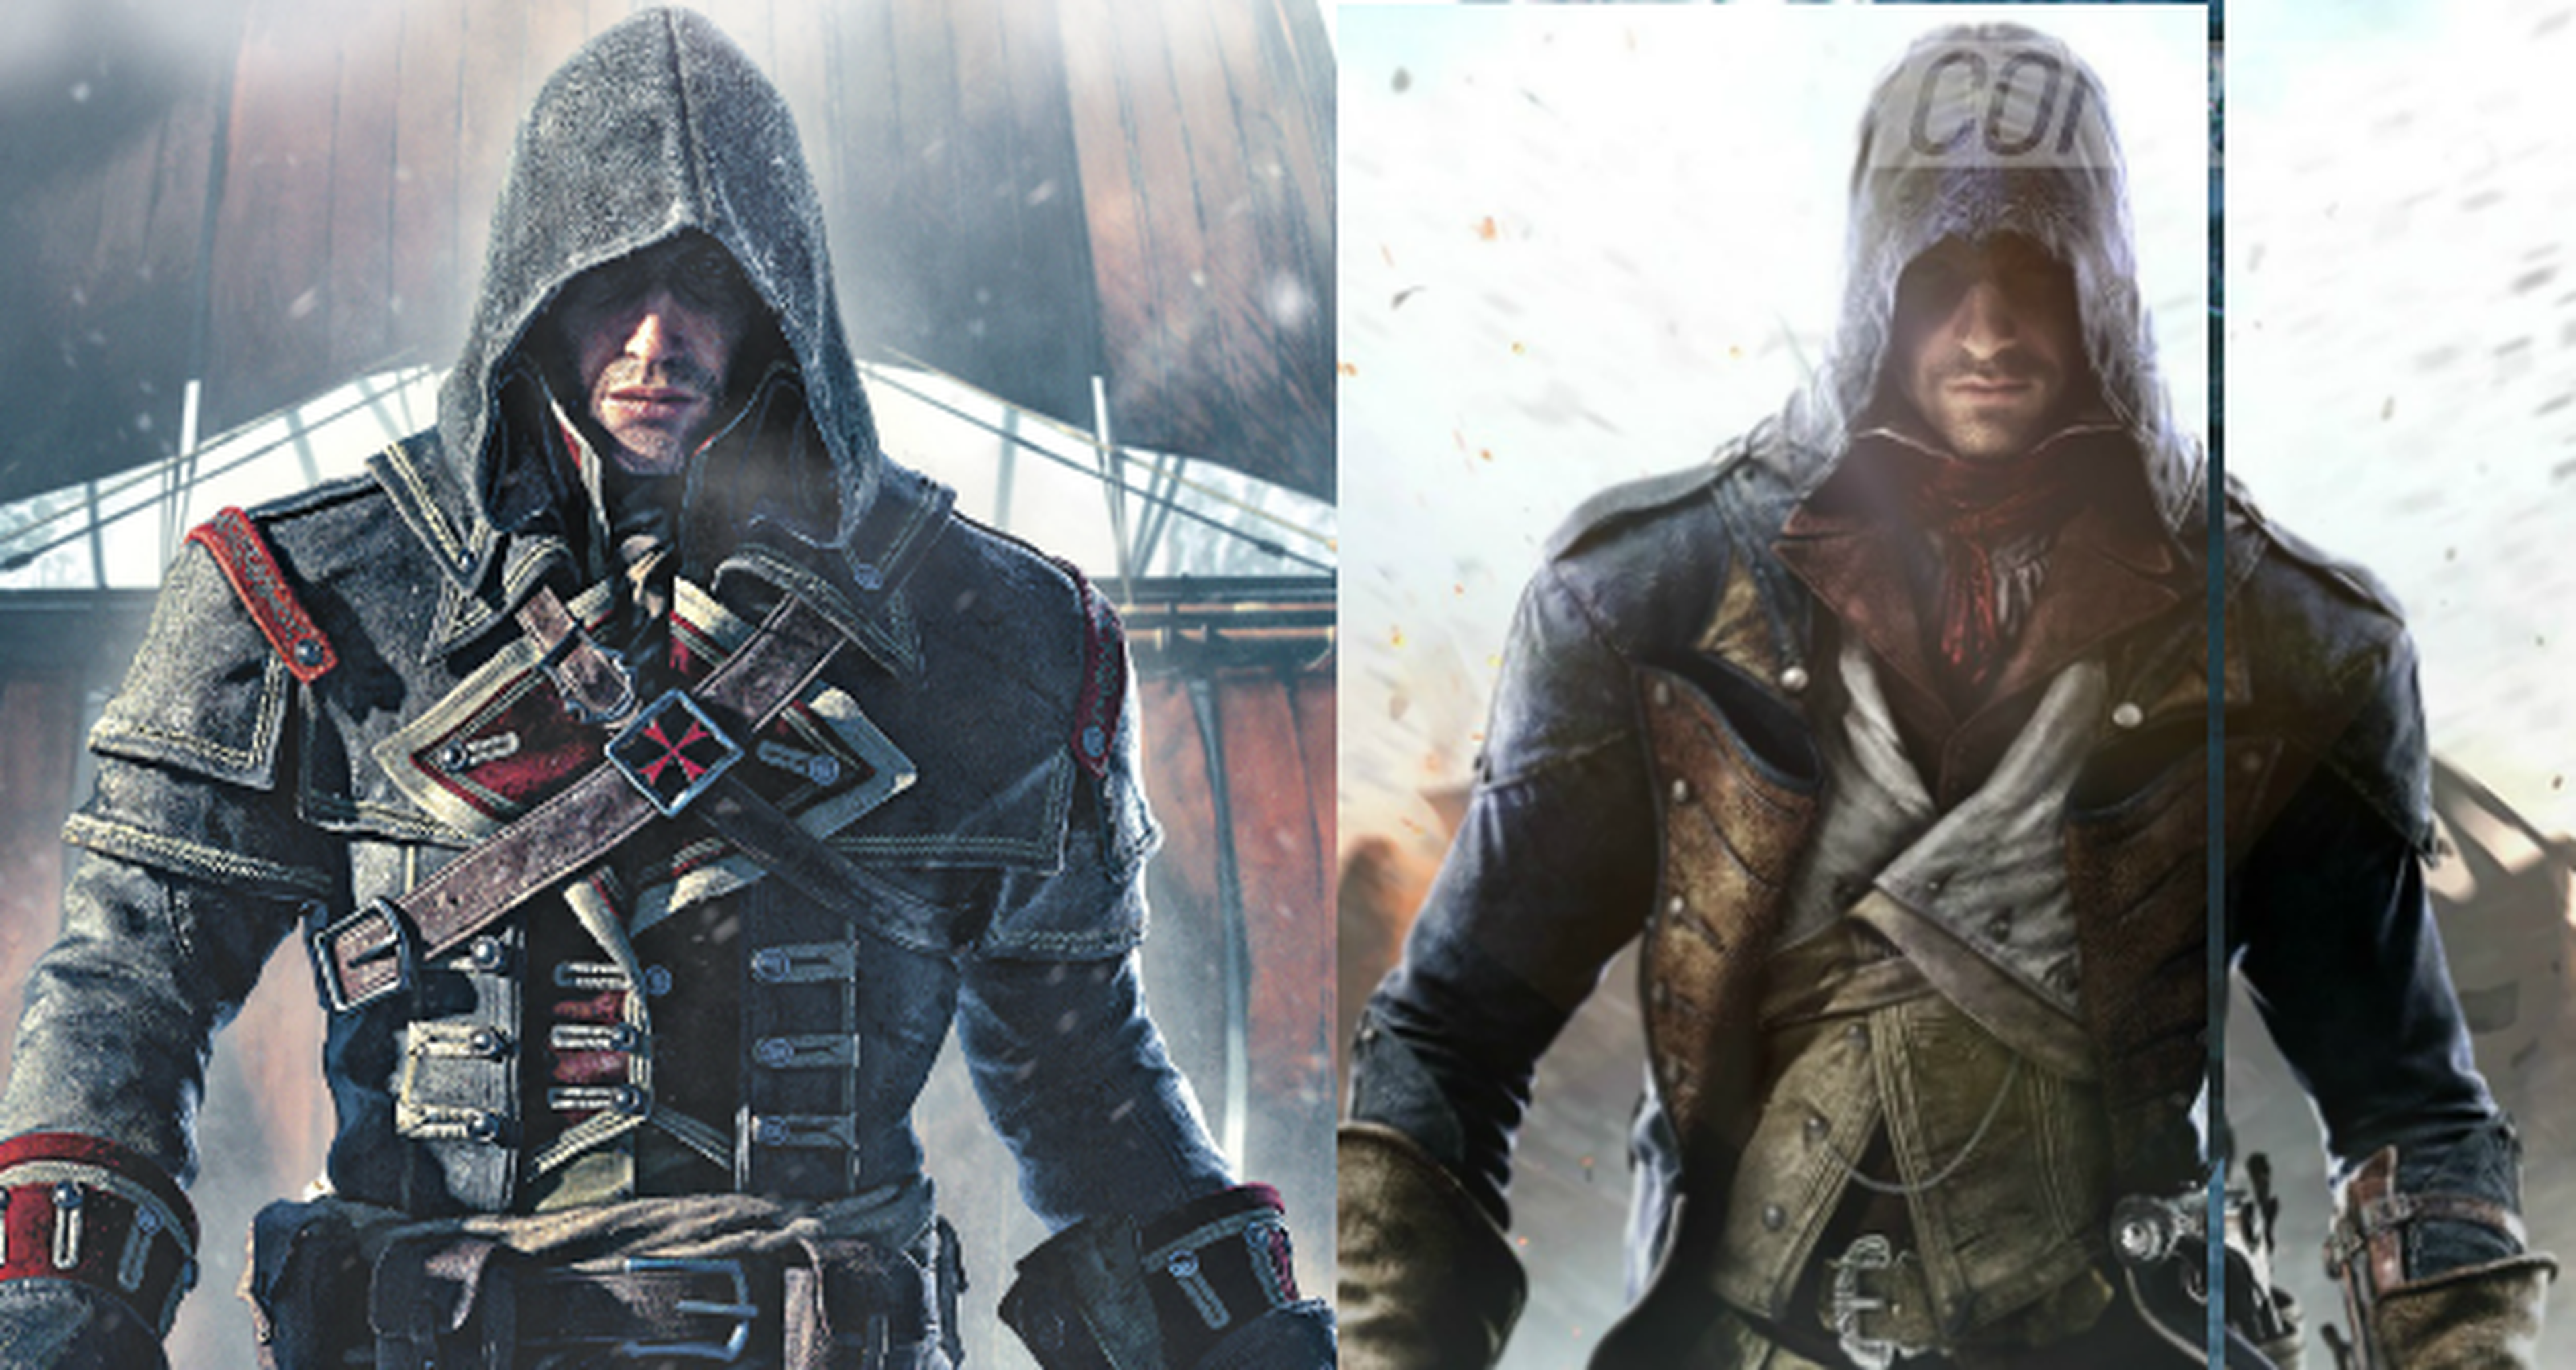 Las historias de Assassin’s Creed Rogue y Assassin’s Creed Unity estarán conectadas